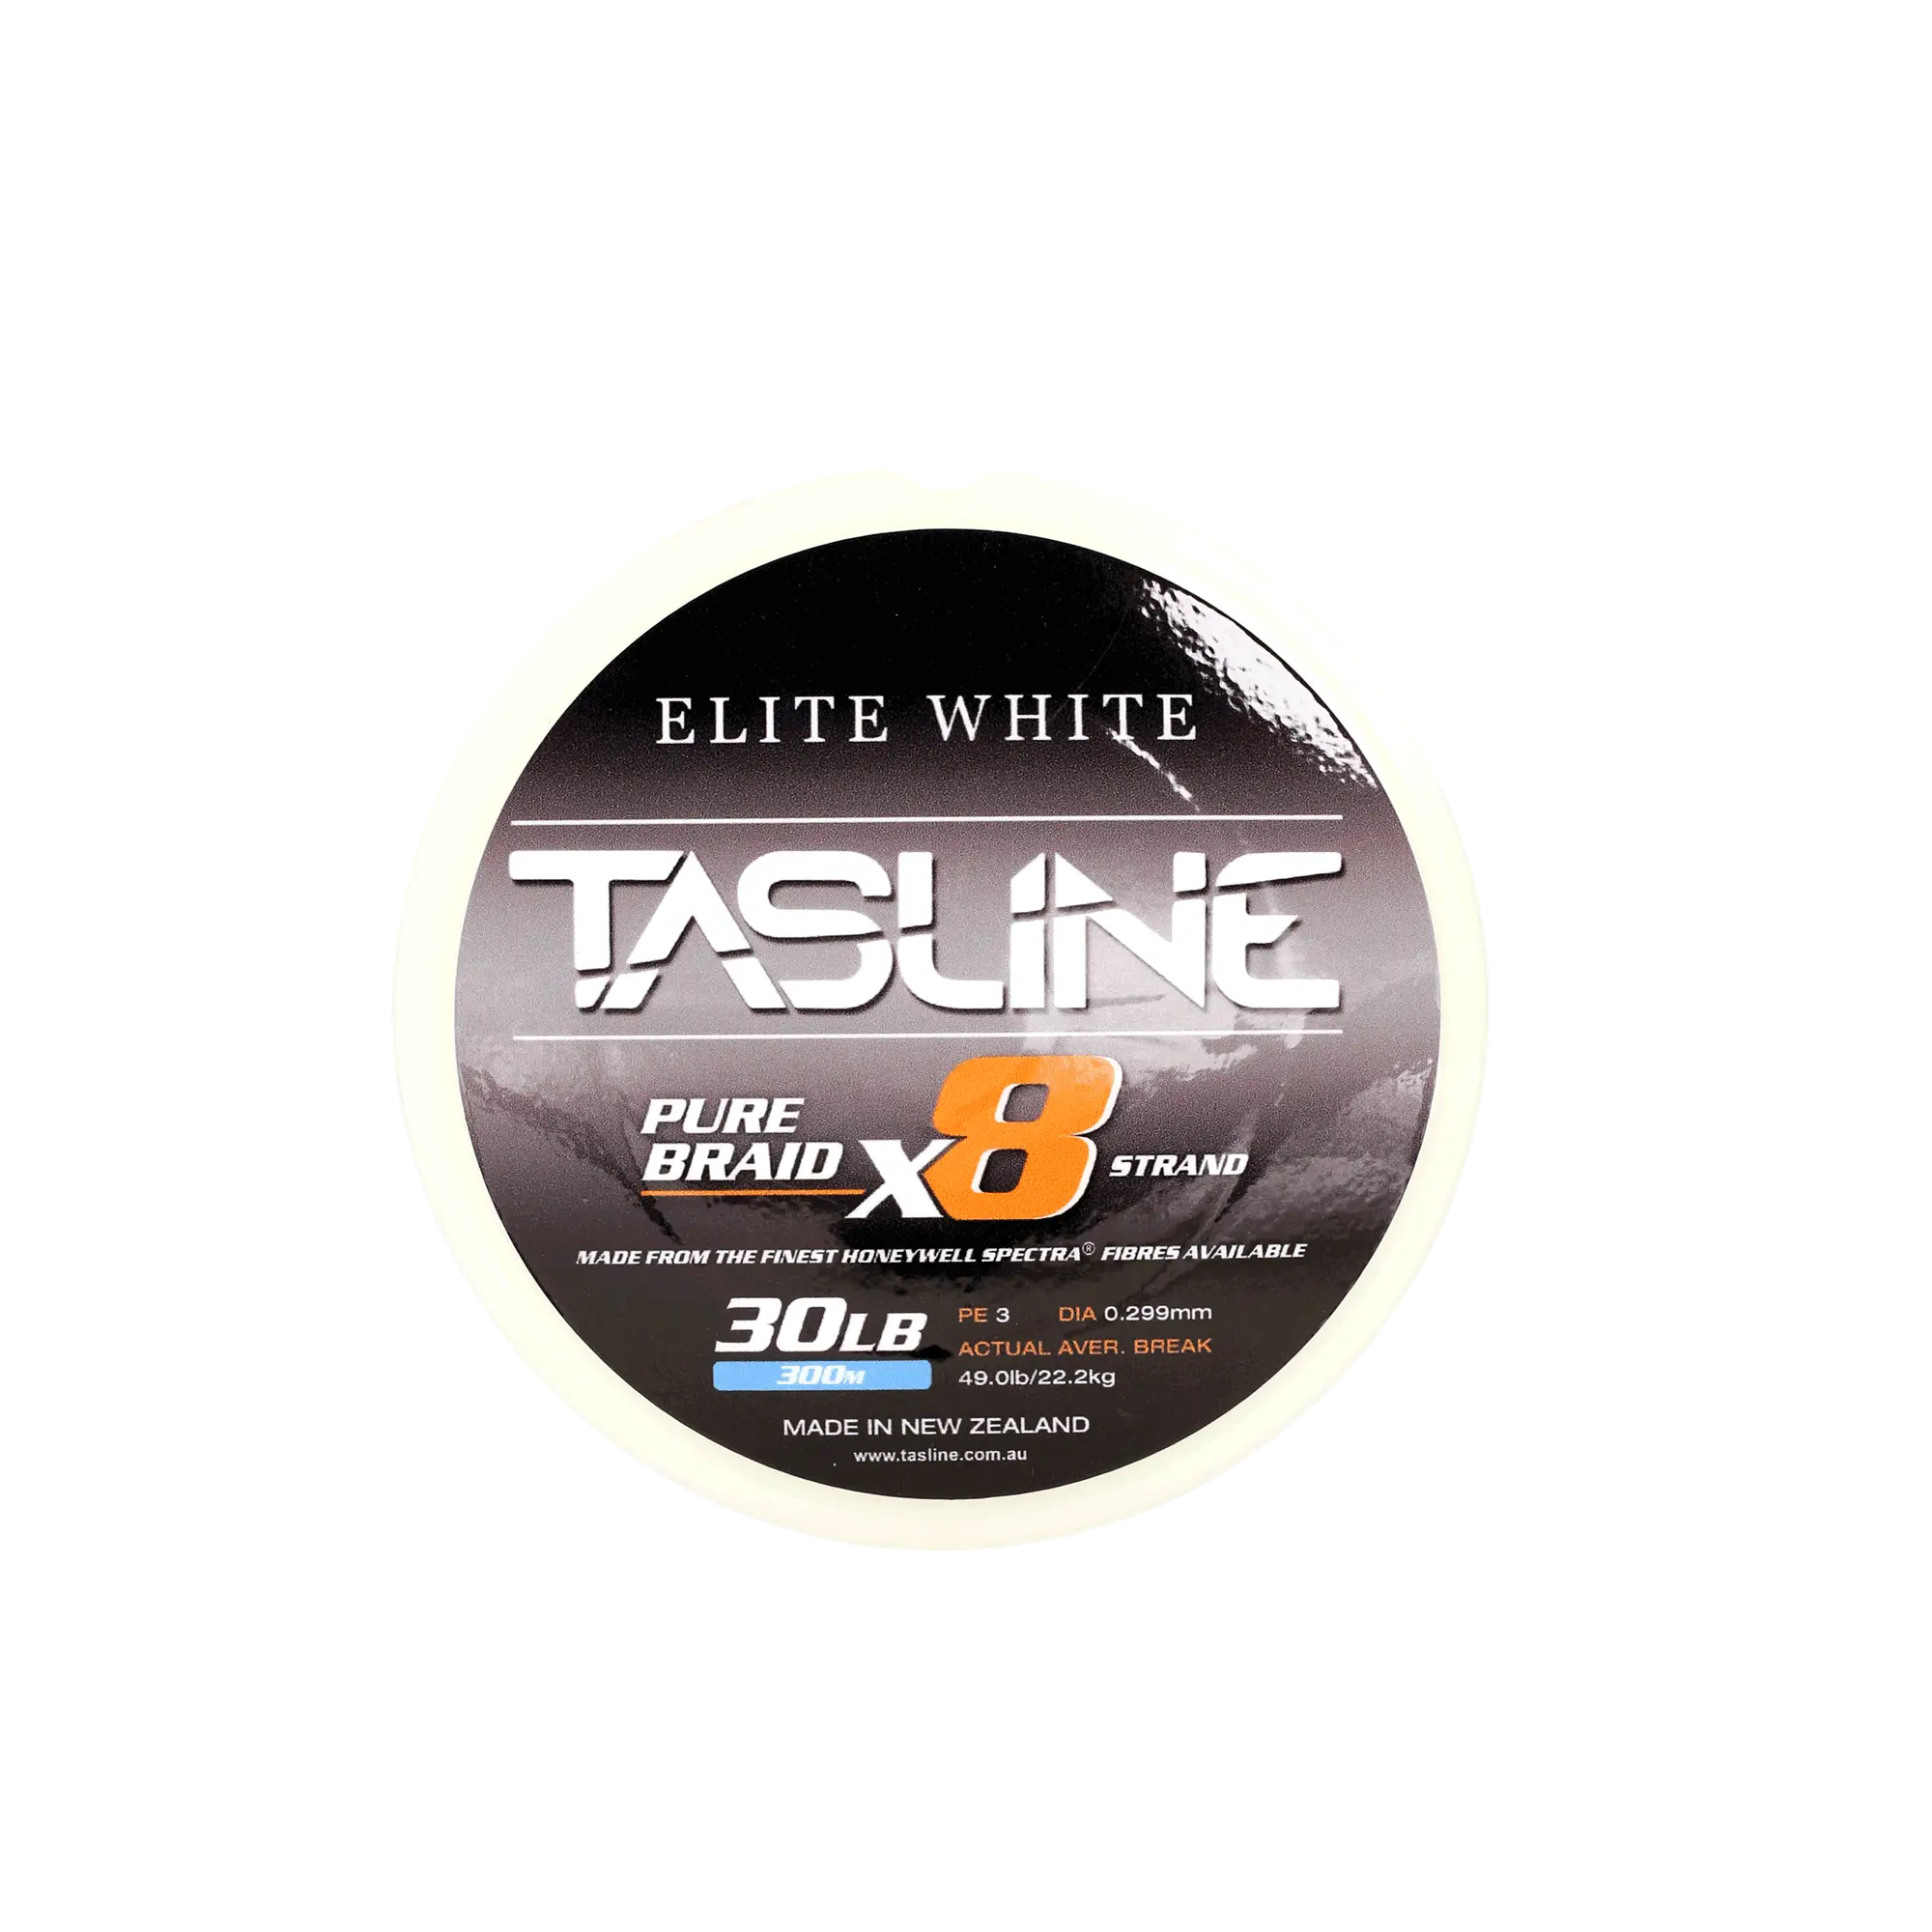 Tasline Elite White 80lb - Option Tackle